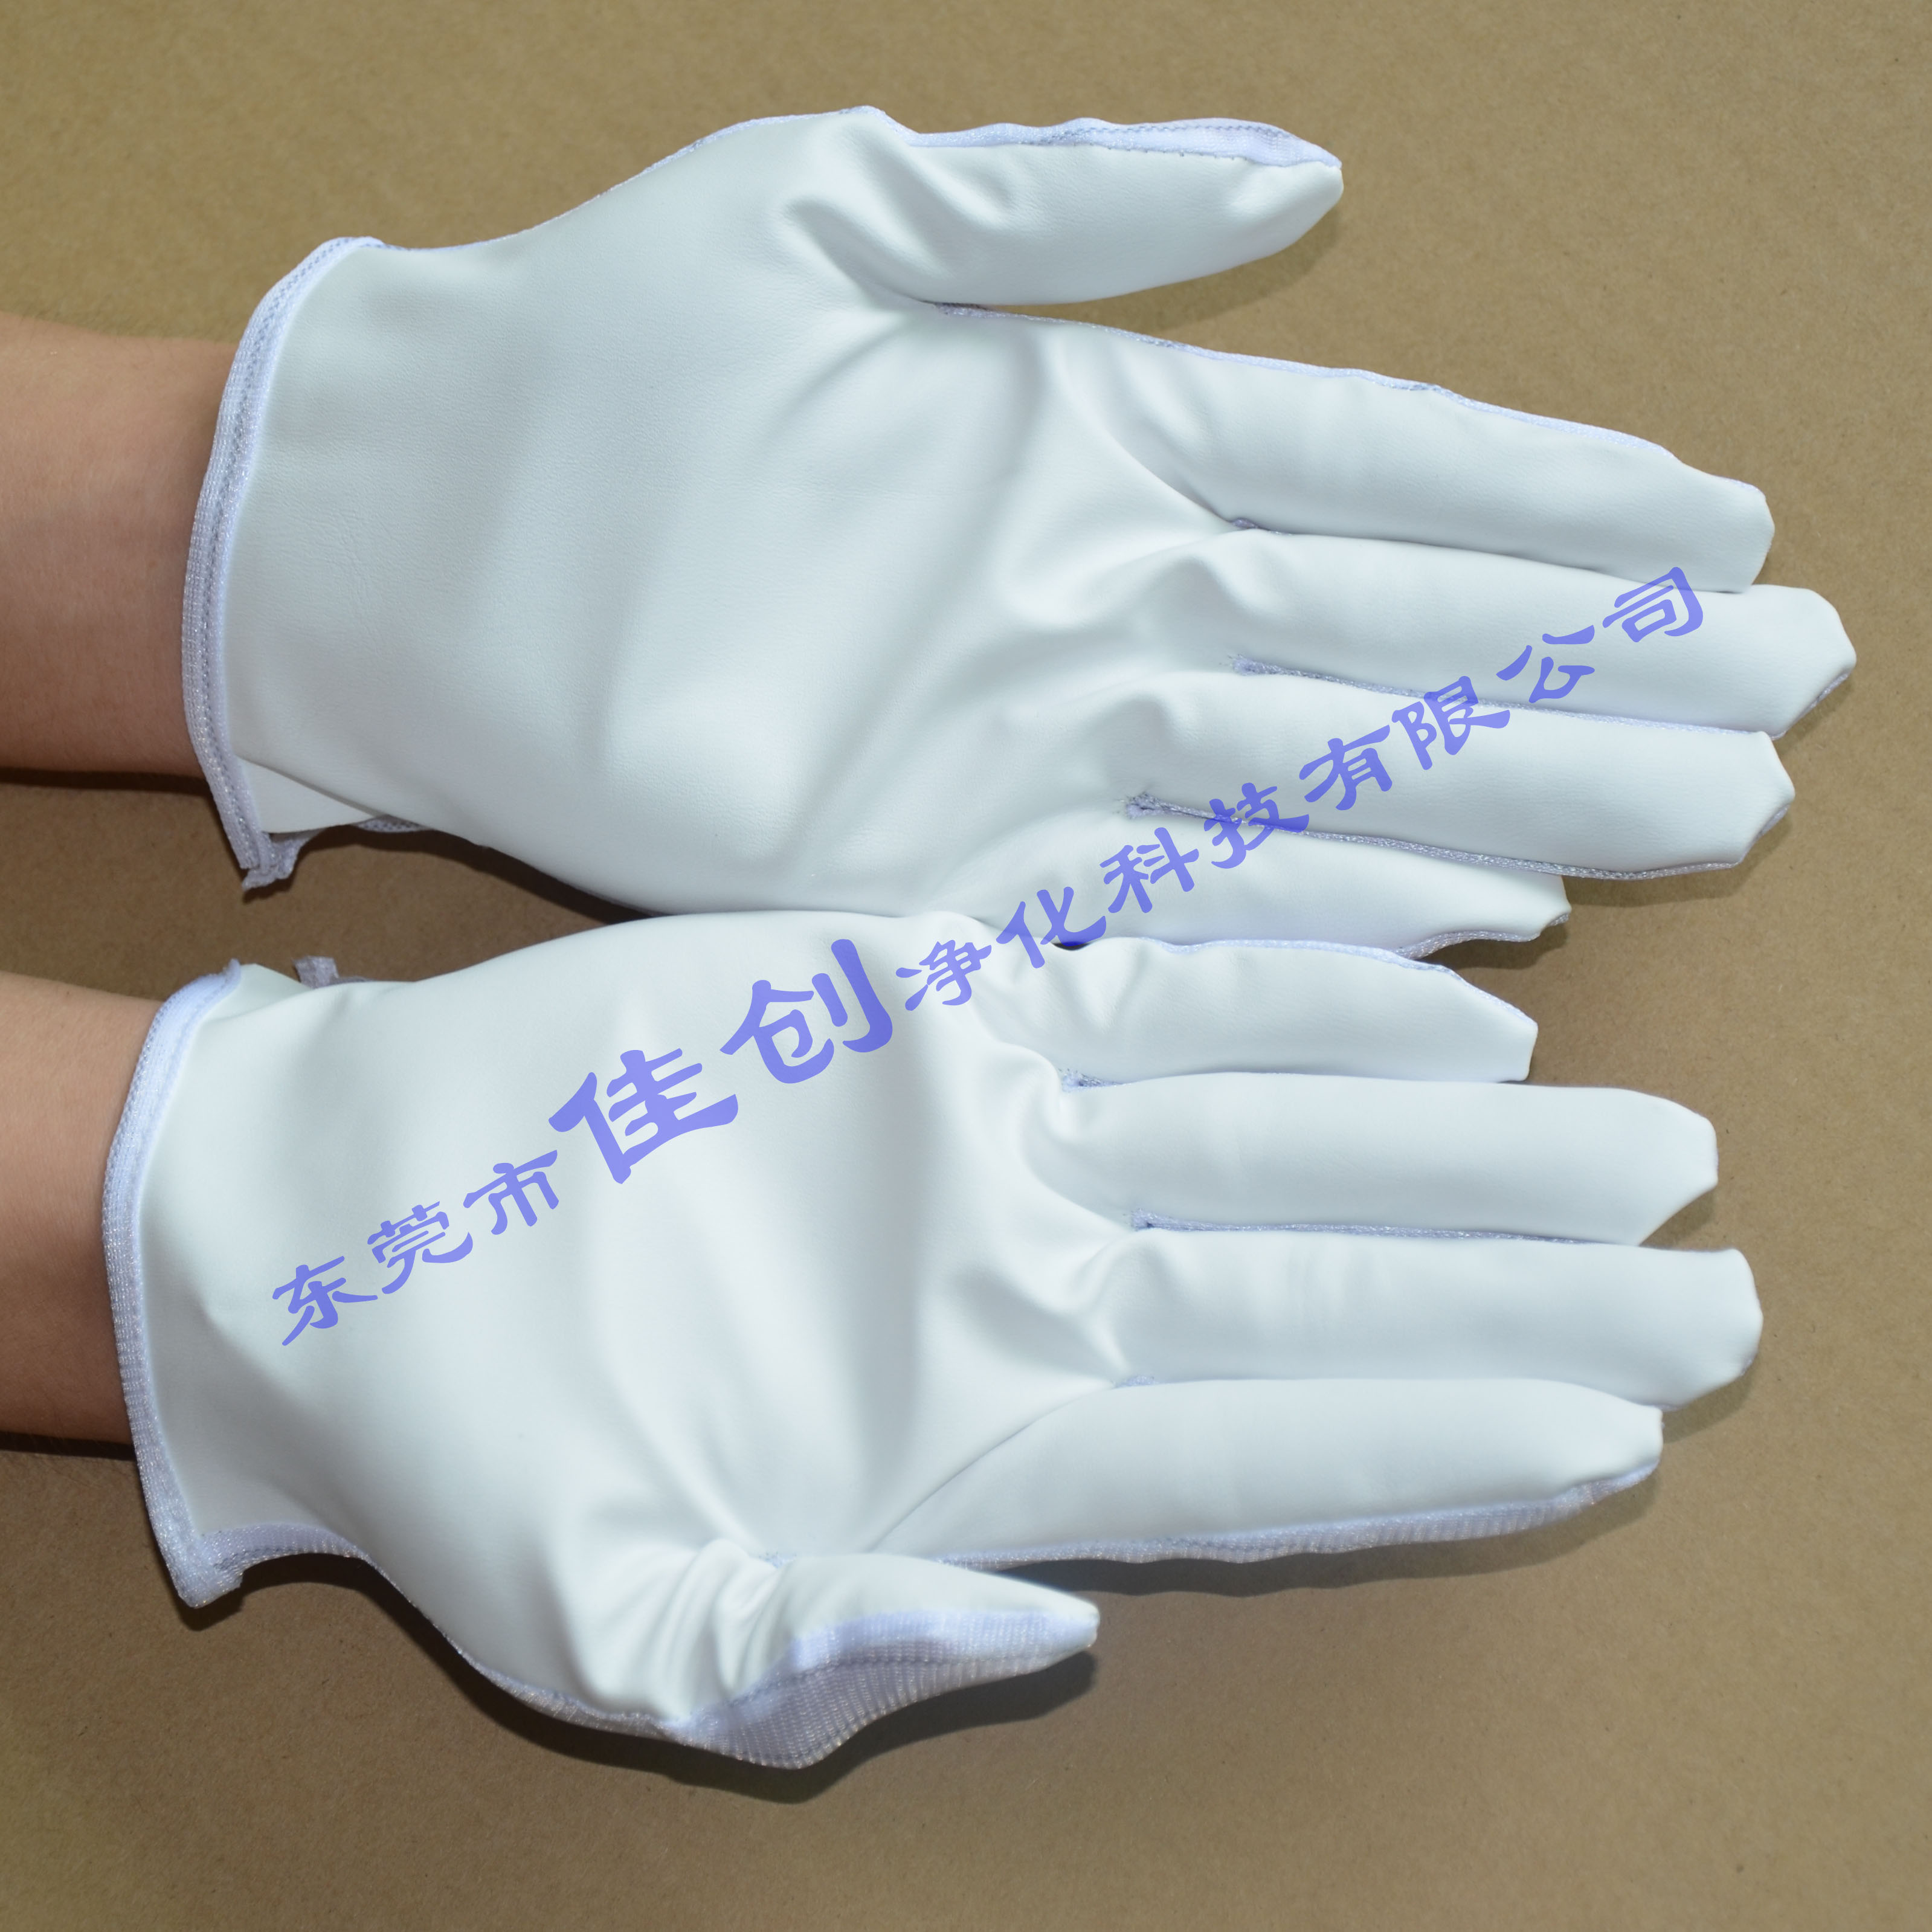 厂家直销高品质PU防静电涂层手套批发